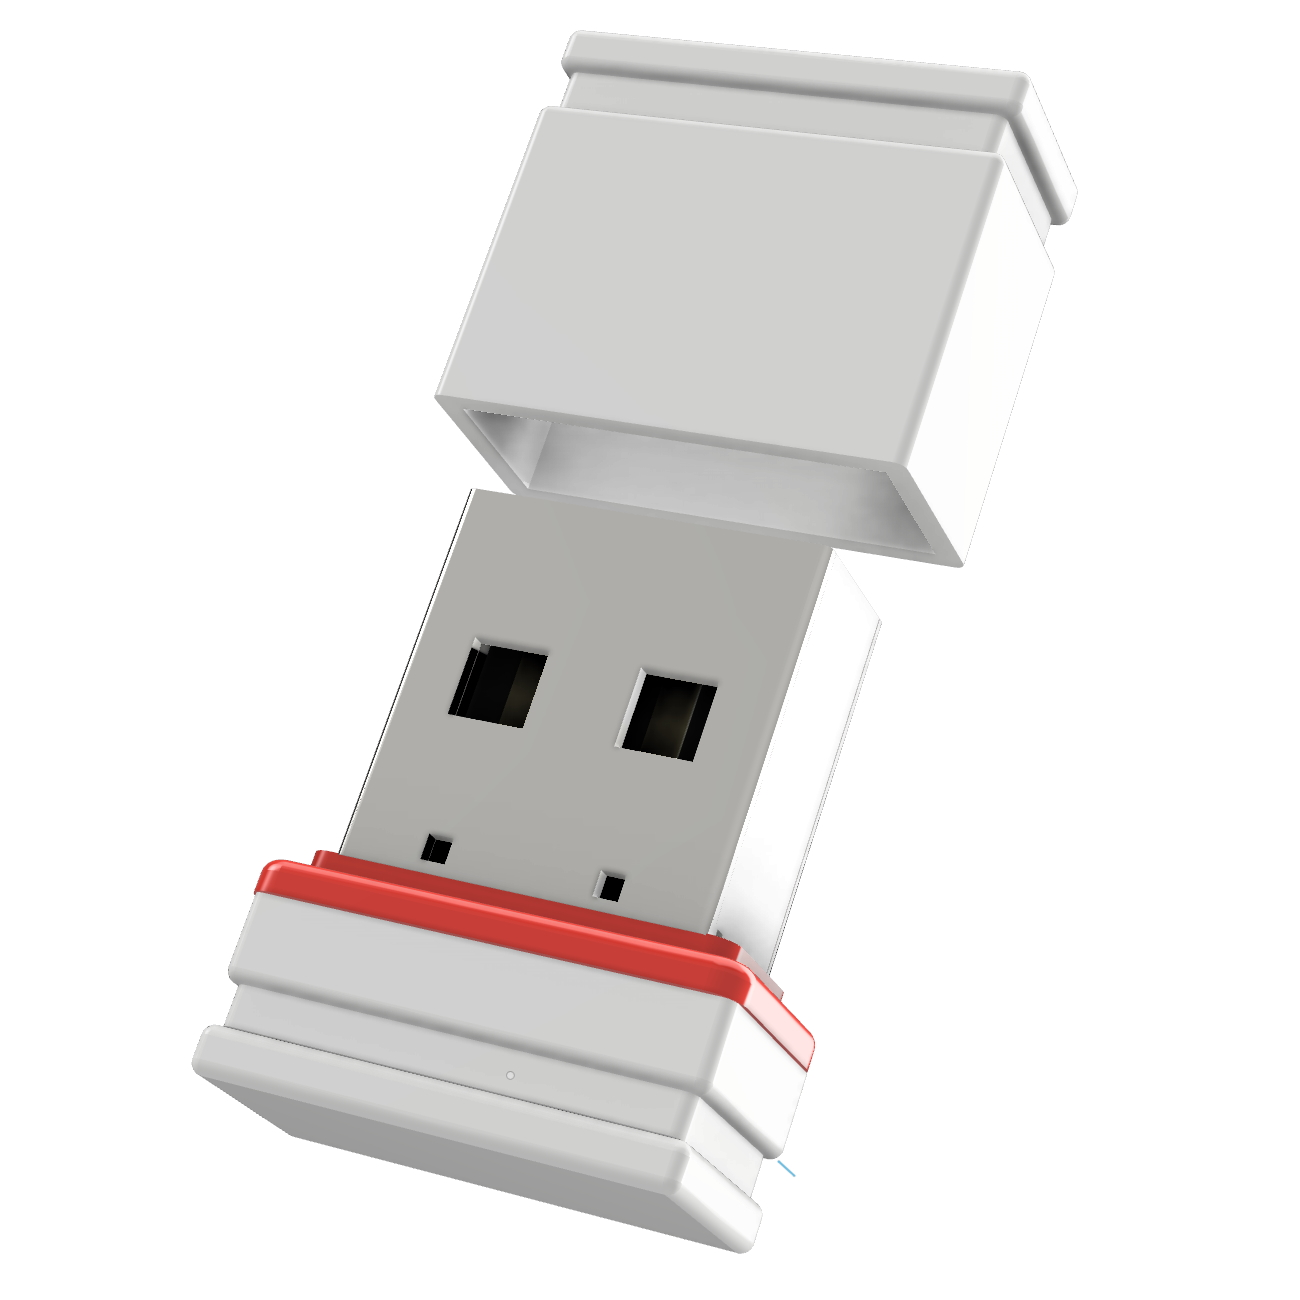 USB GERMANY 2 P1 (Weiss/Rot, ®ULTRA USB-Stick GB) Mini